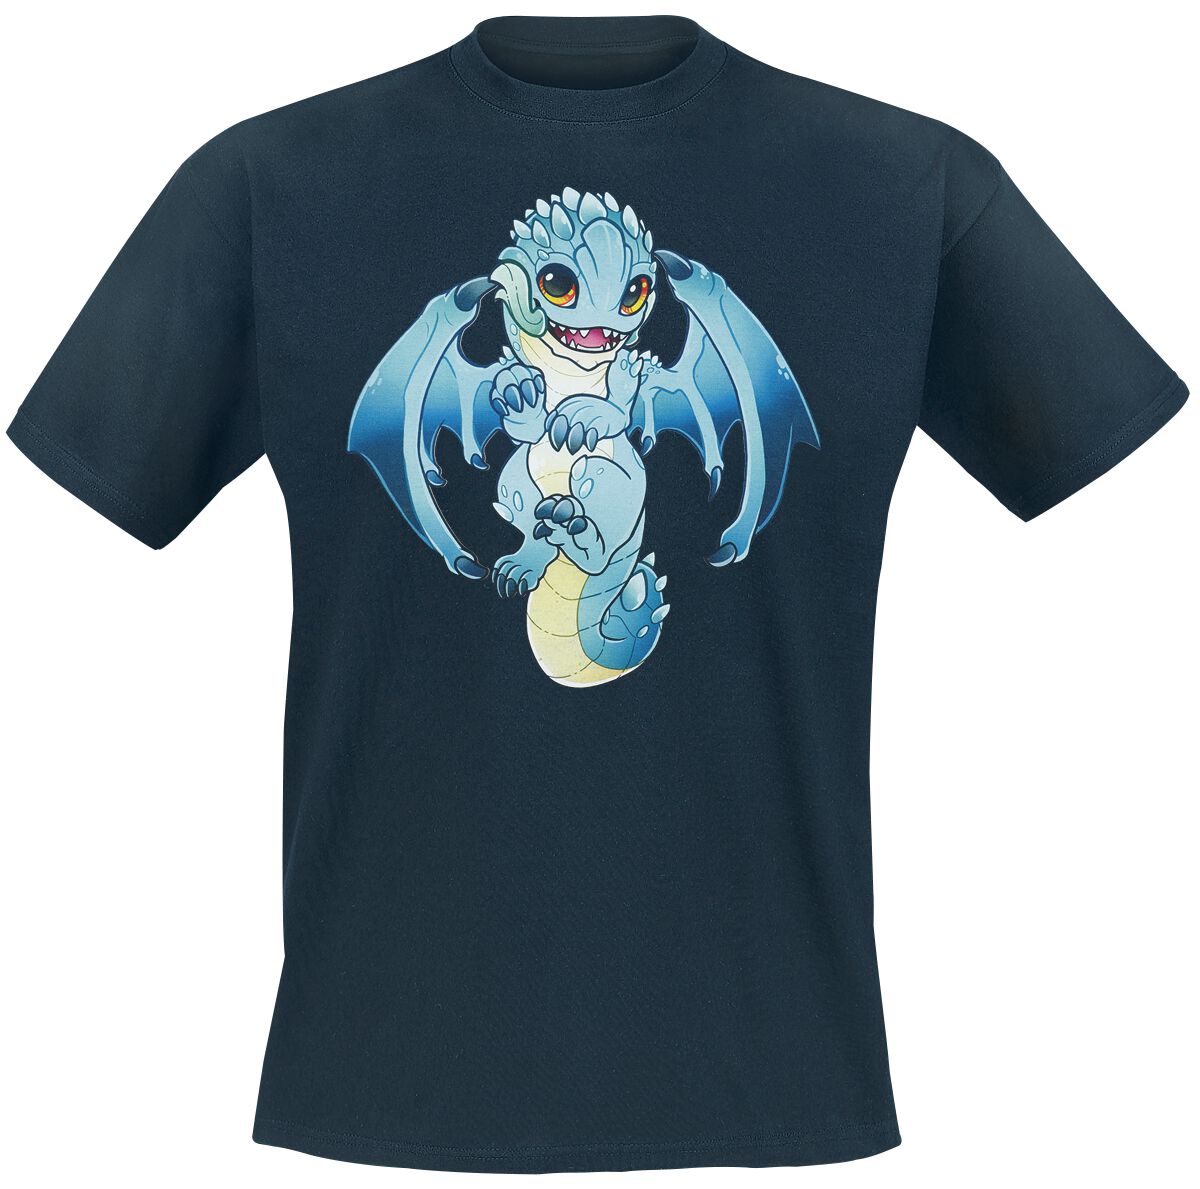 Guild Wars - Gaming T-Shirt - Baby Aurene by RinTheYordle - S bis XL - für Männer - Größe M - dunkelblau  - EMP exklusives Merchandise!